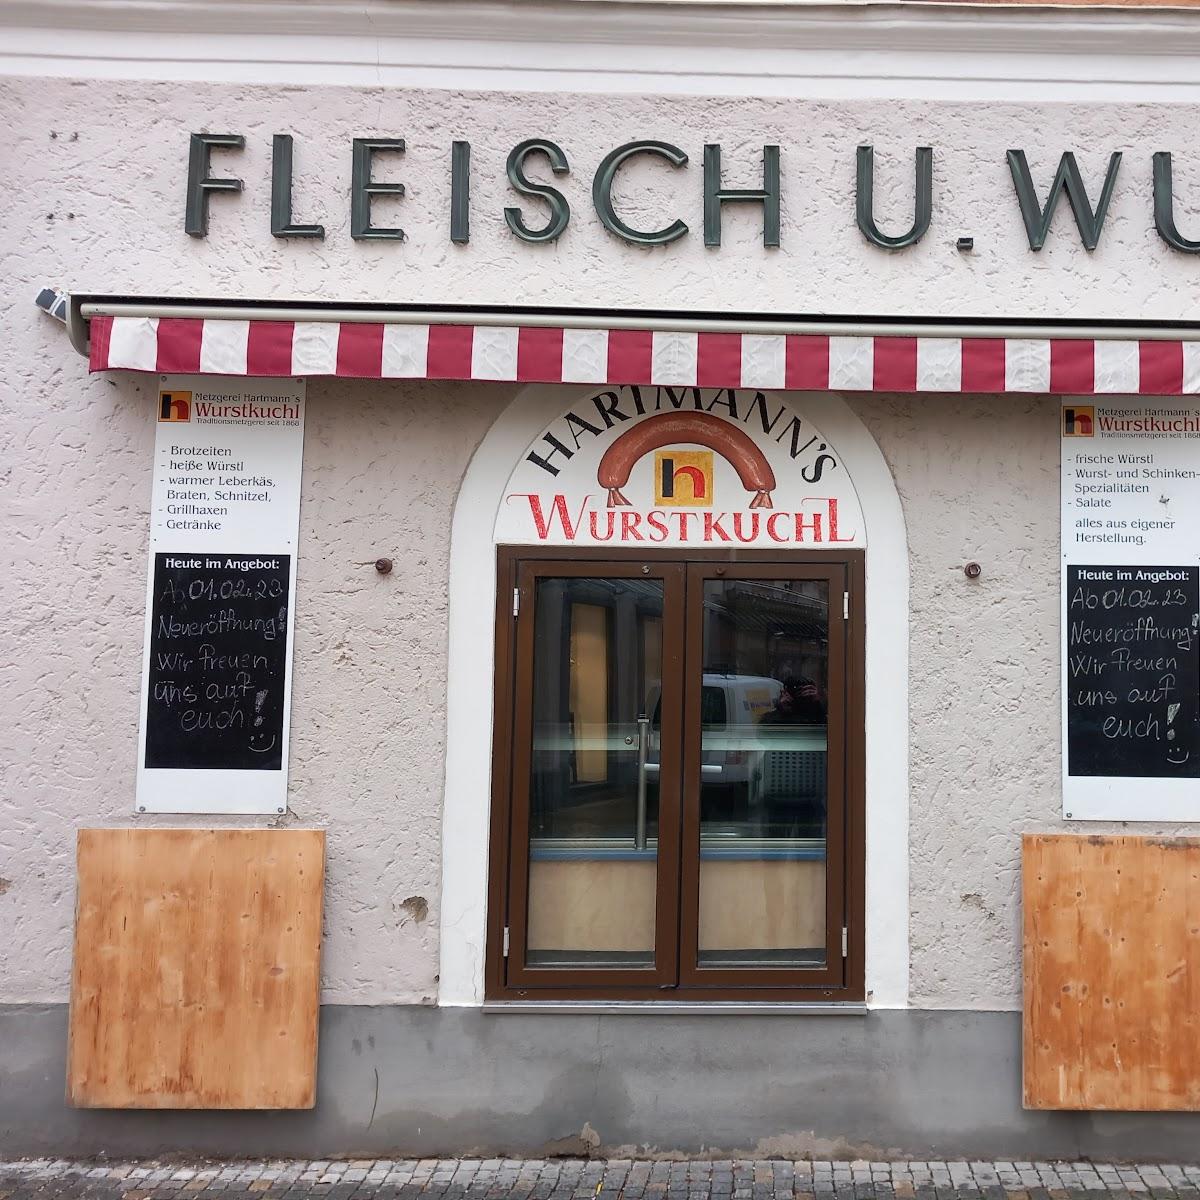 Restaurant "Wurstkuchl" in Bad Reichenhall